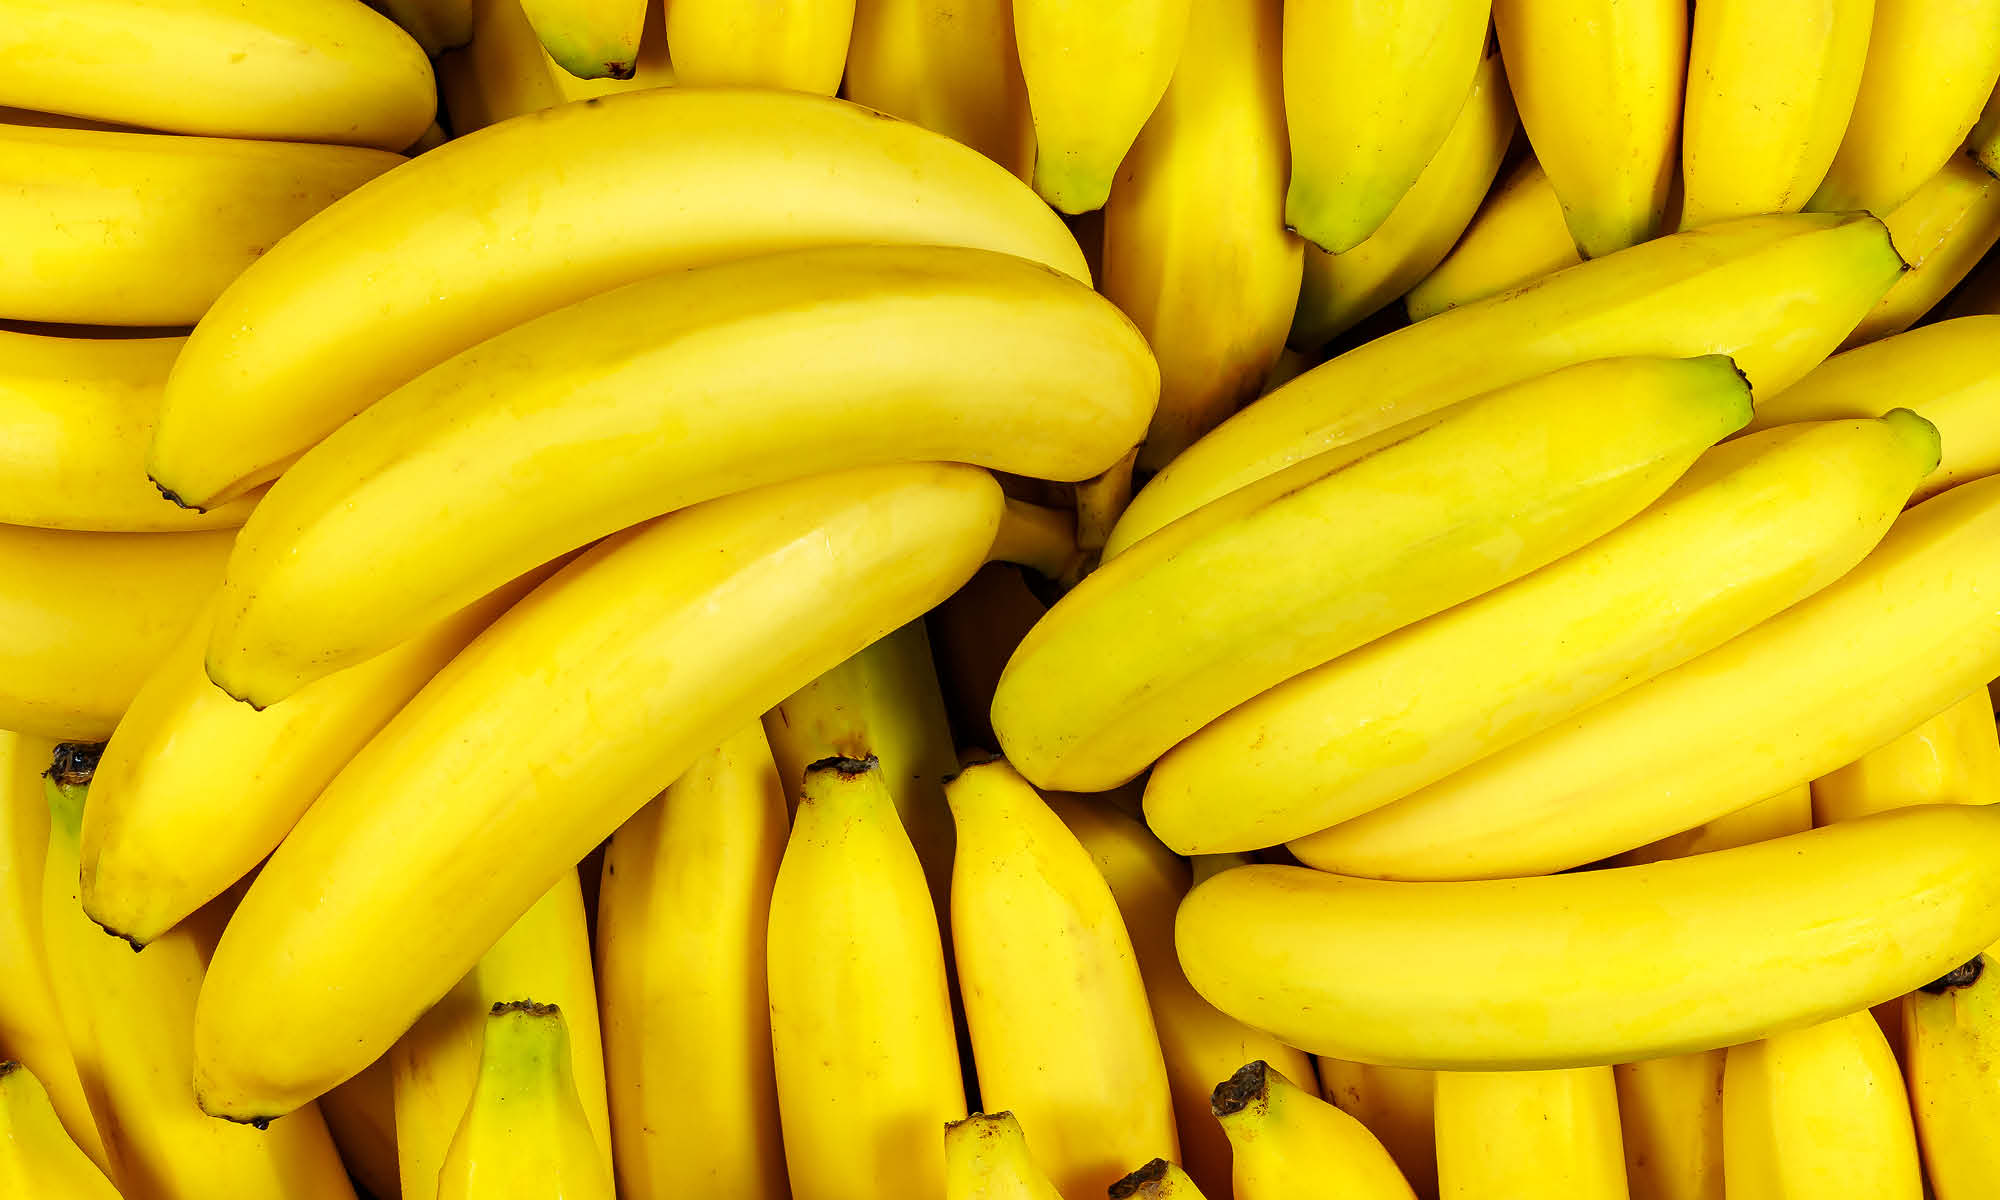 Nahaufnahme mehrerer frischer gelber Bananen in Bündeln 